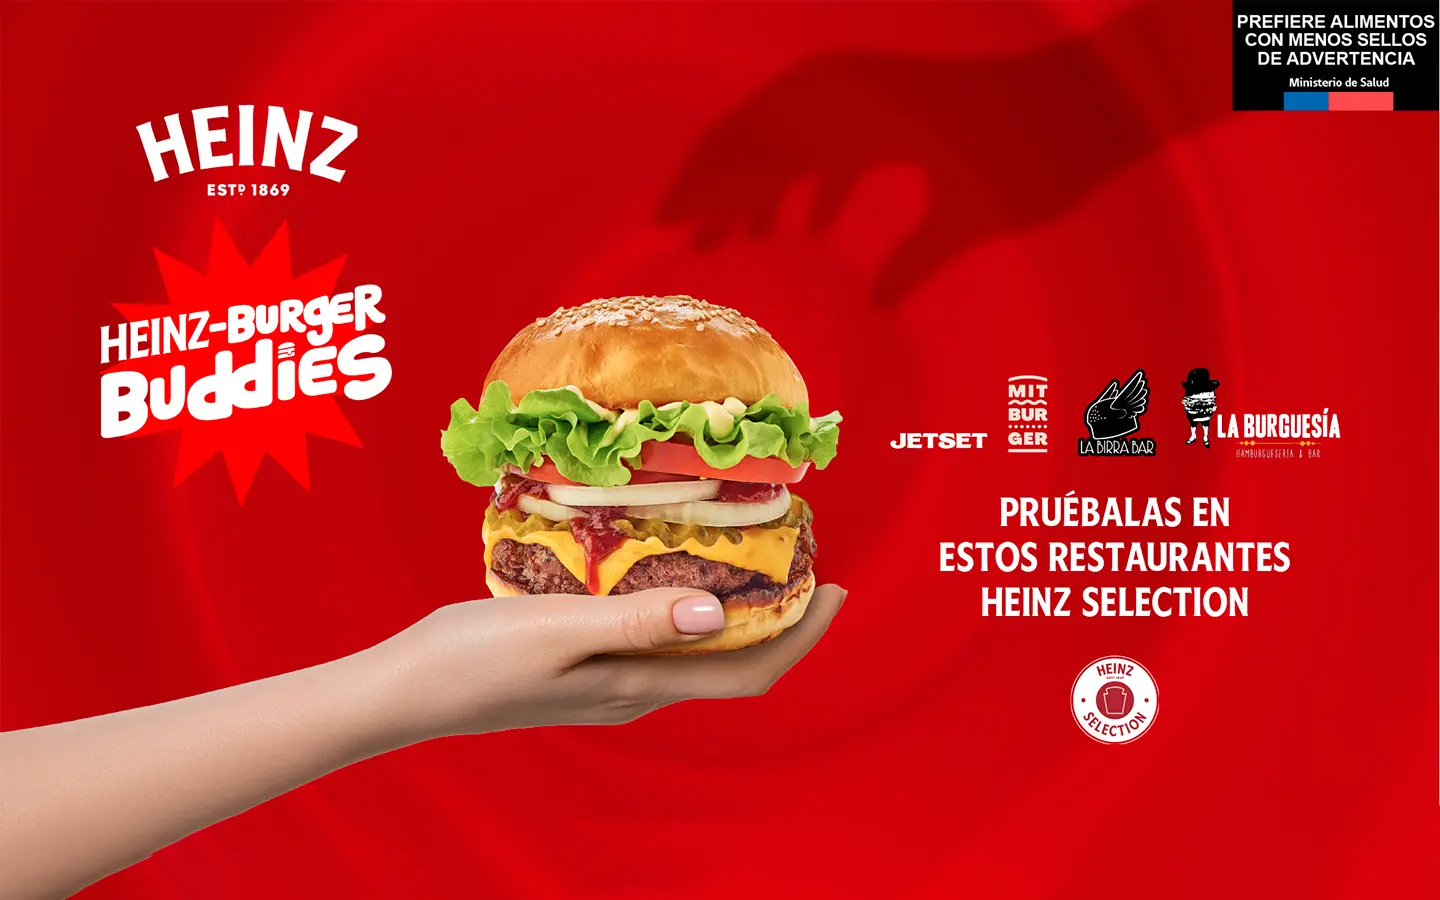 Heinz presenta los mejores lugares para comer hamburguesas con sus salsas